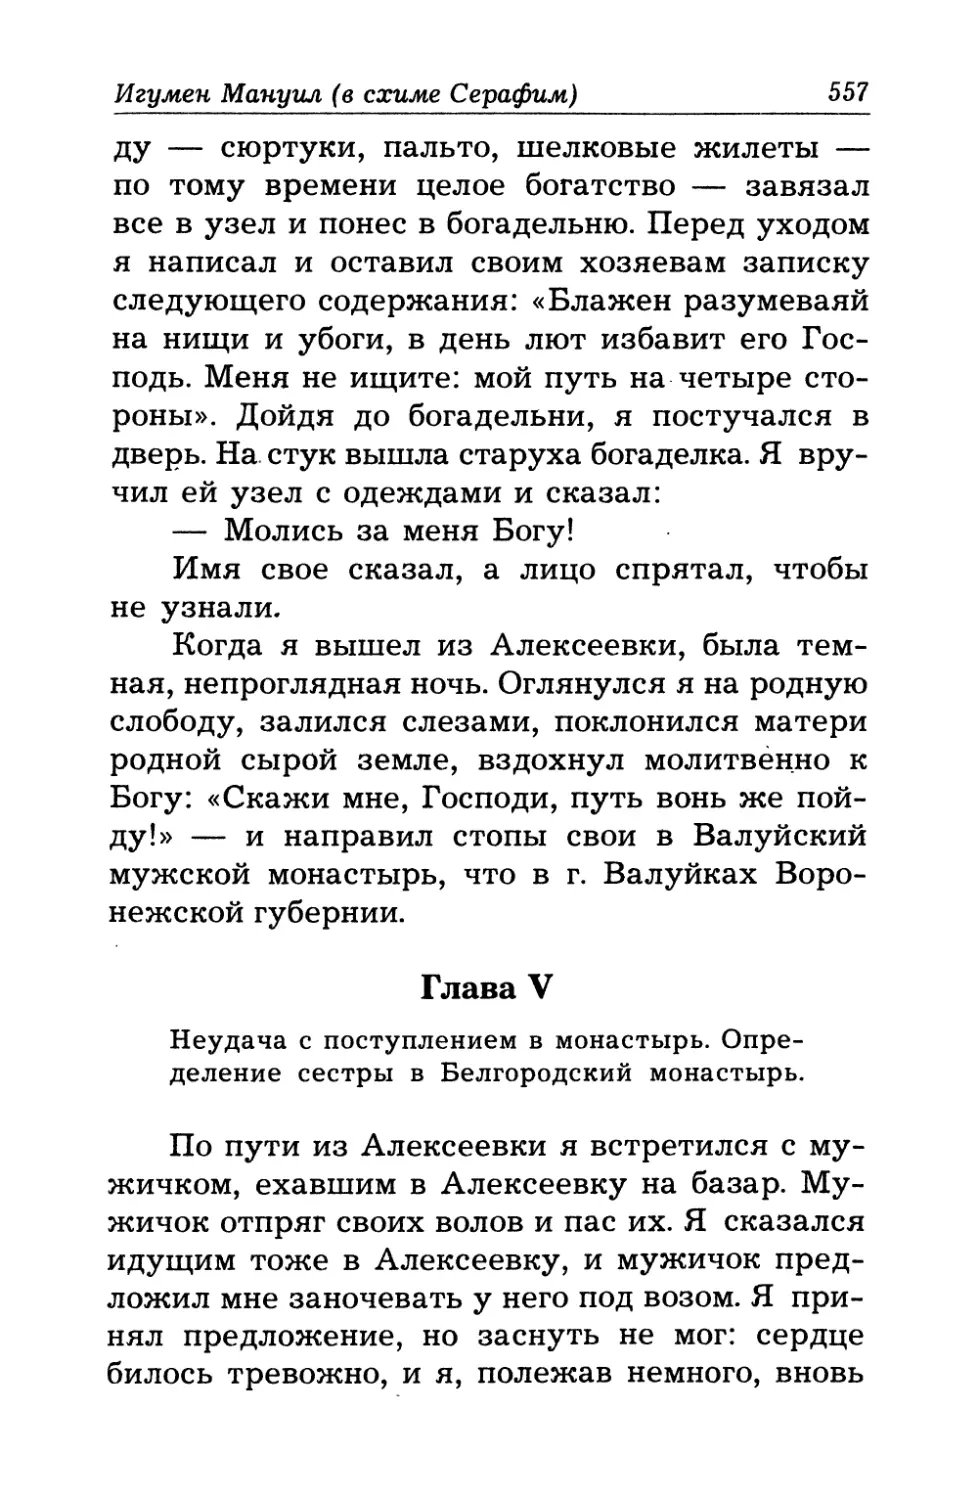 Глава V - Неудача с поступлением в монастырь. Определение сестры в Белгородский монастырь.